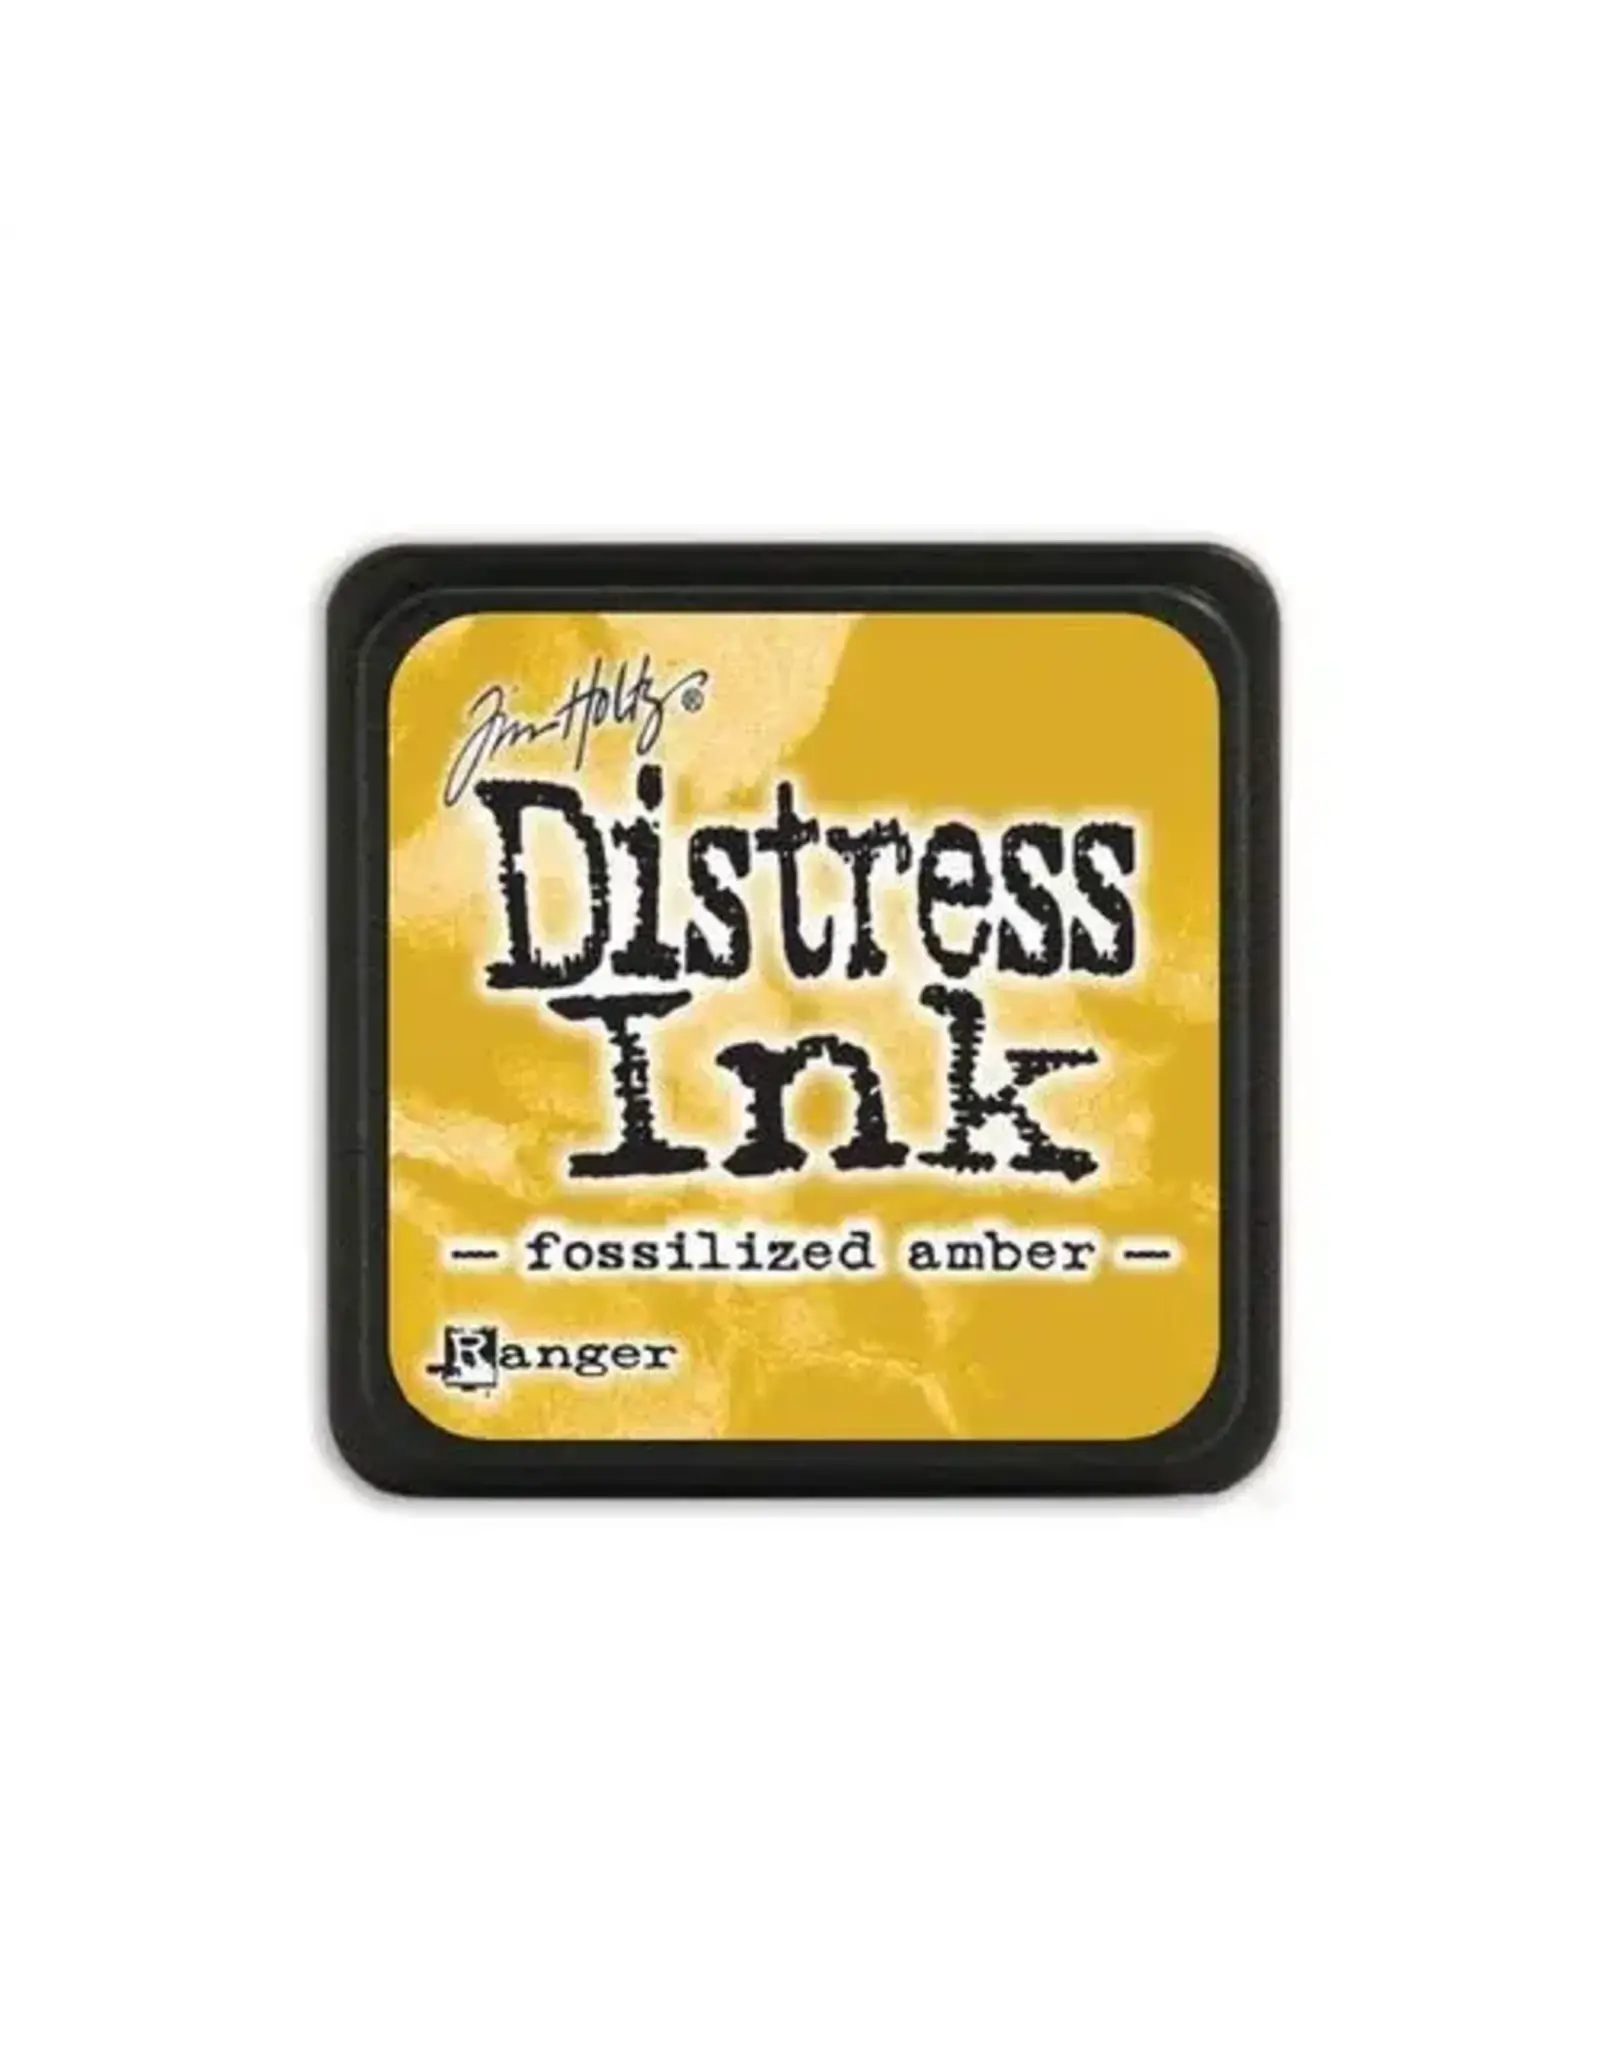 Tim Holtz - Ranger Distress "Mini" Ink Pad Fossilized Amber